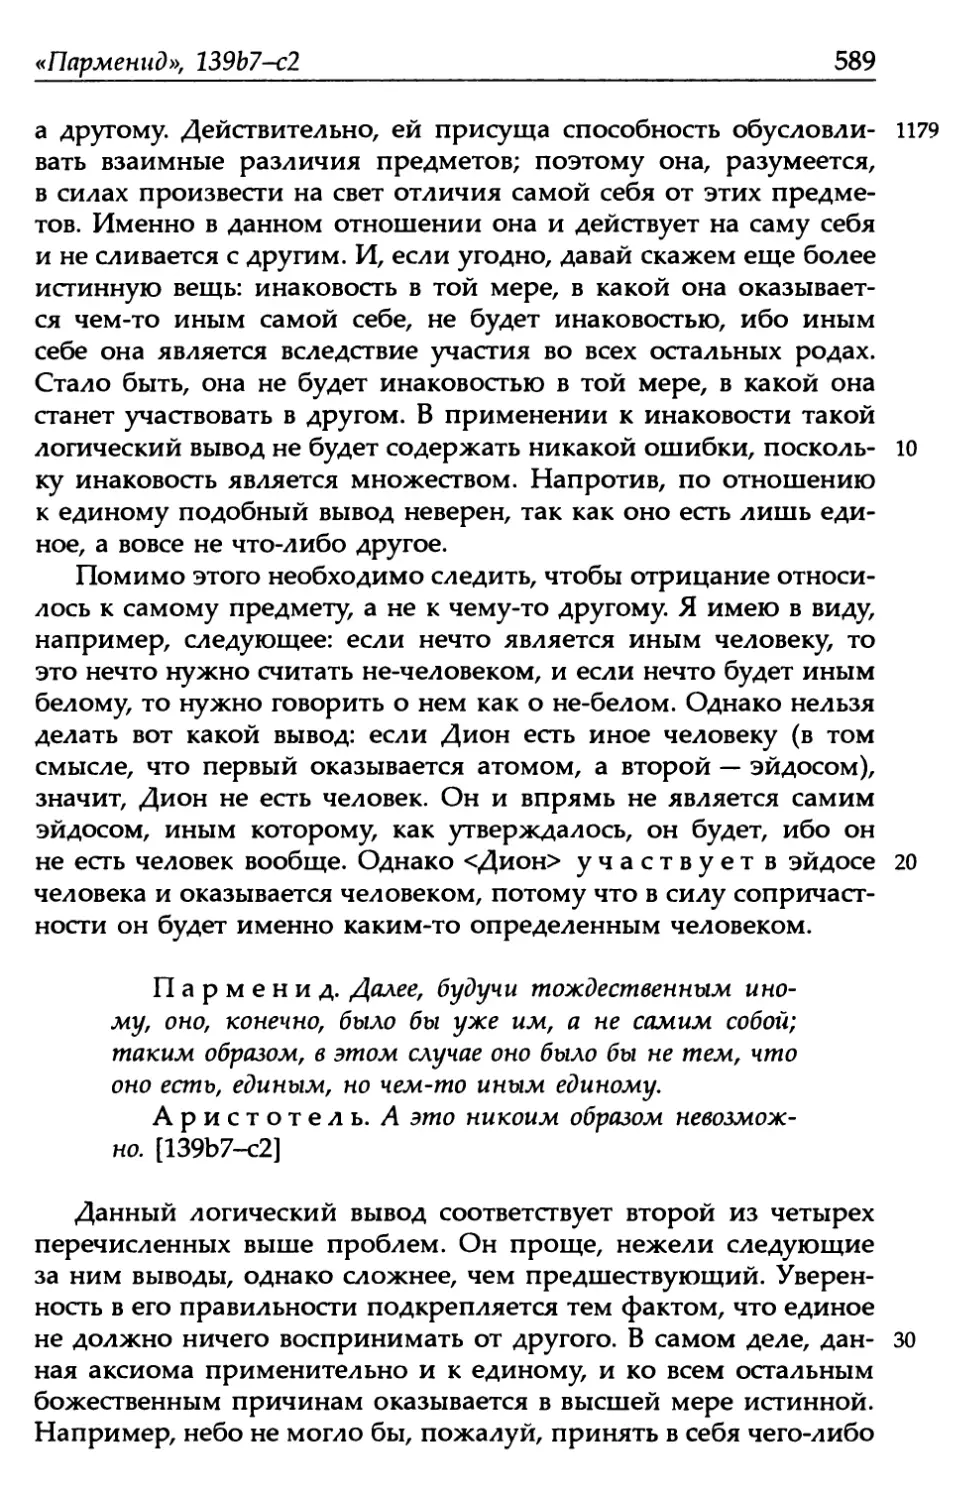 «Парменид», 139b7-с2